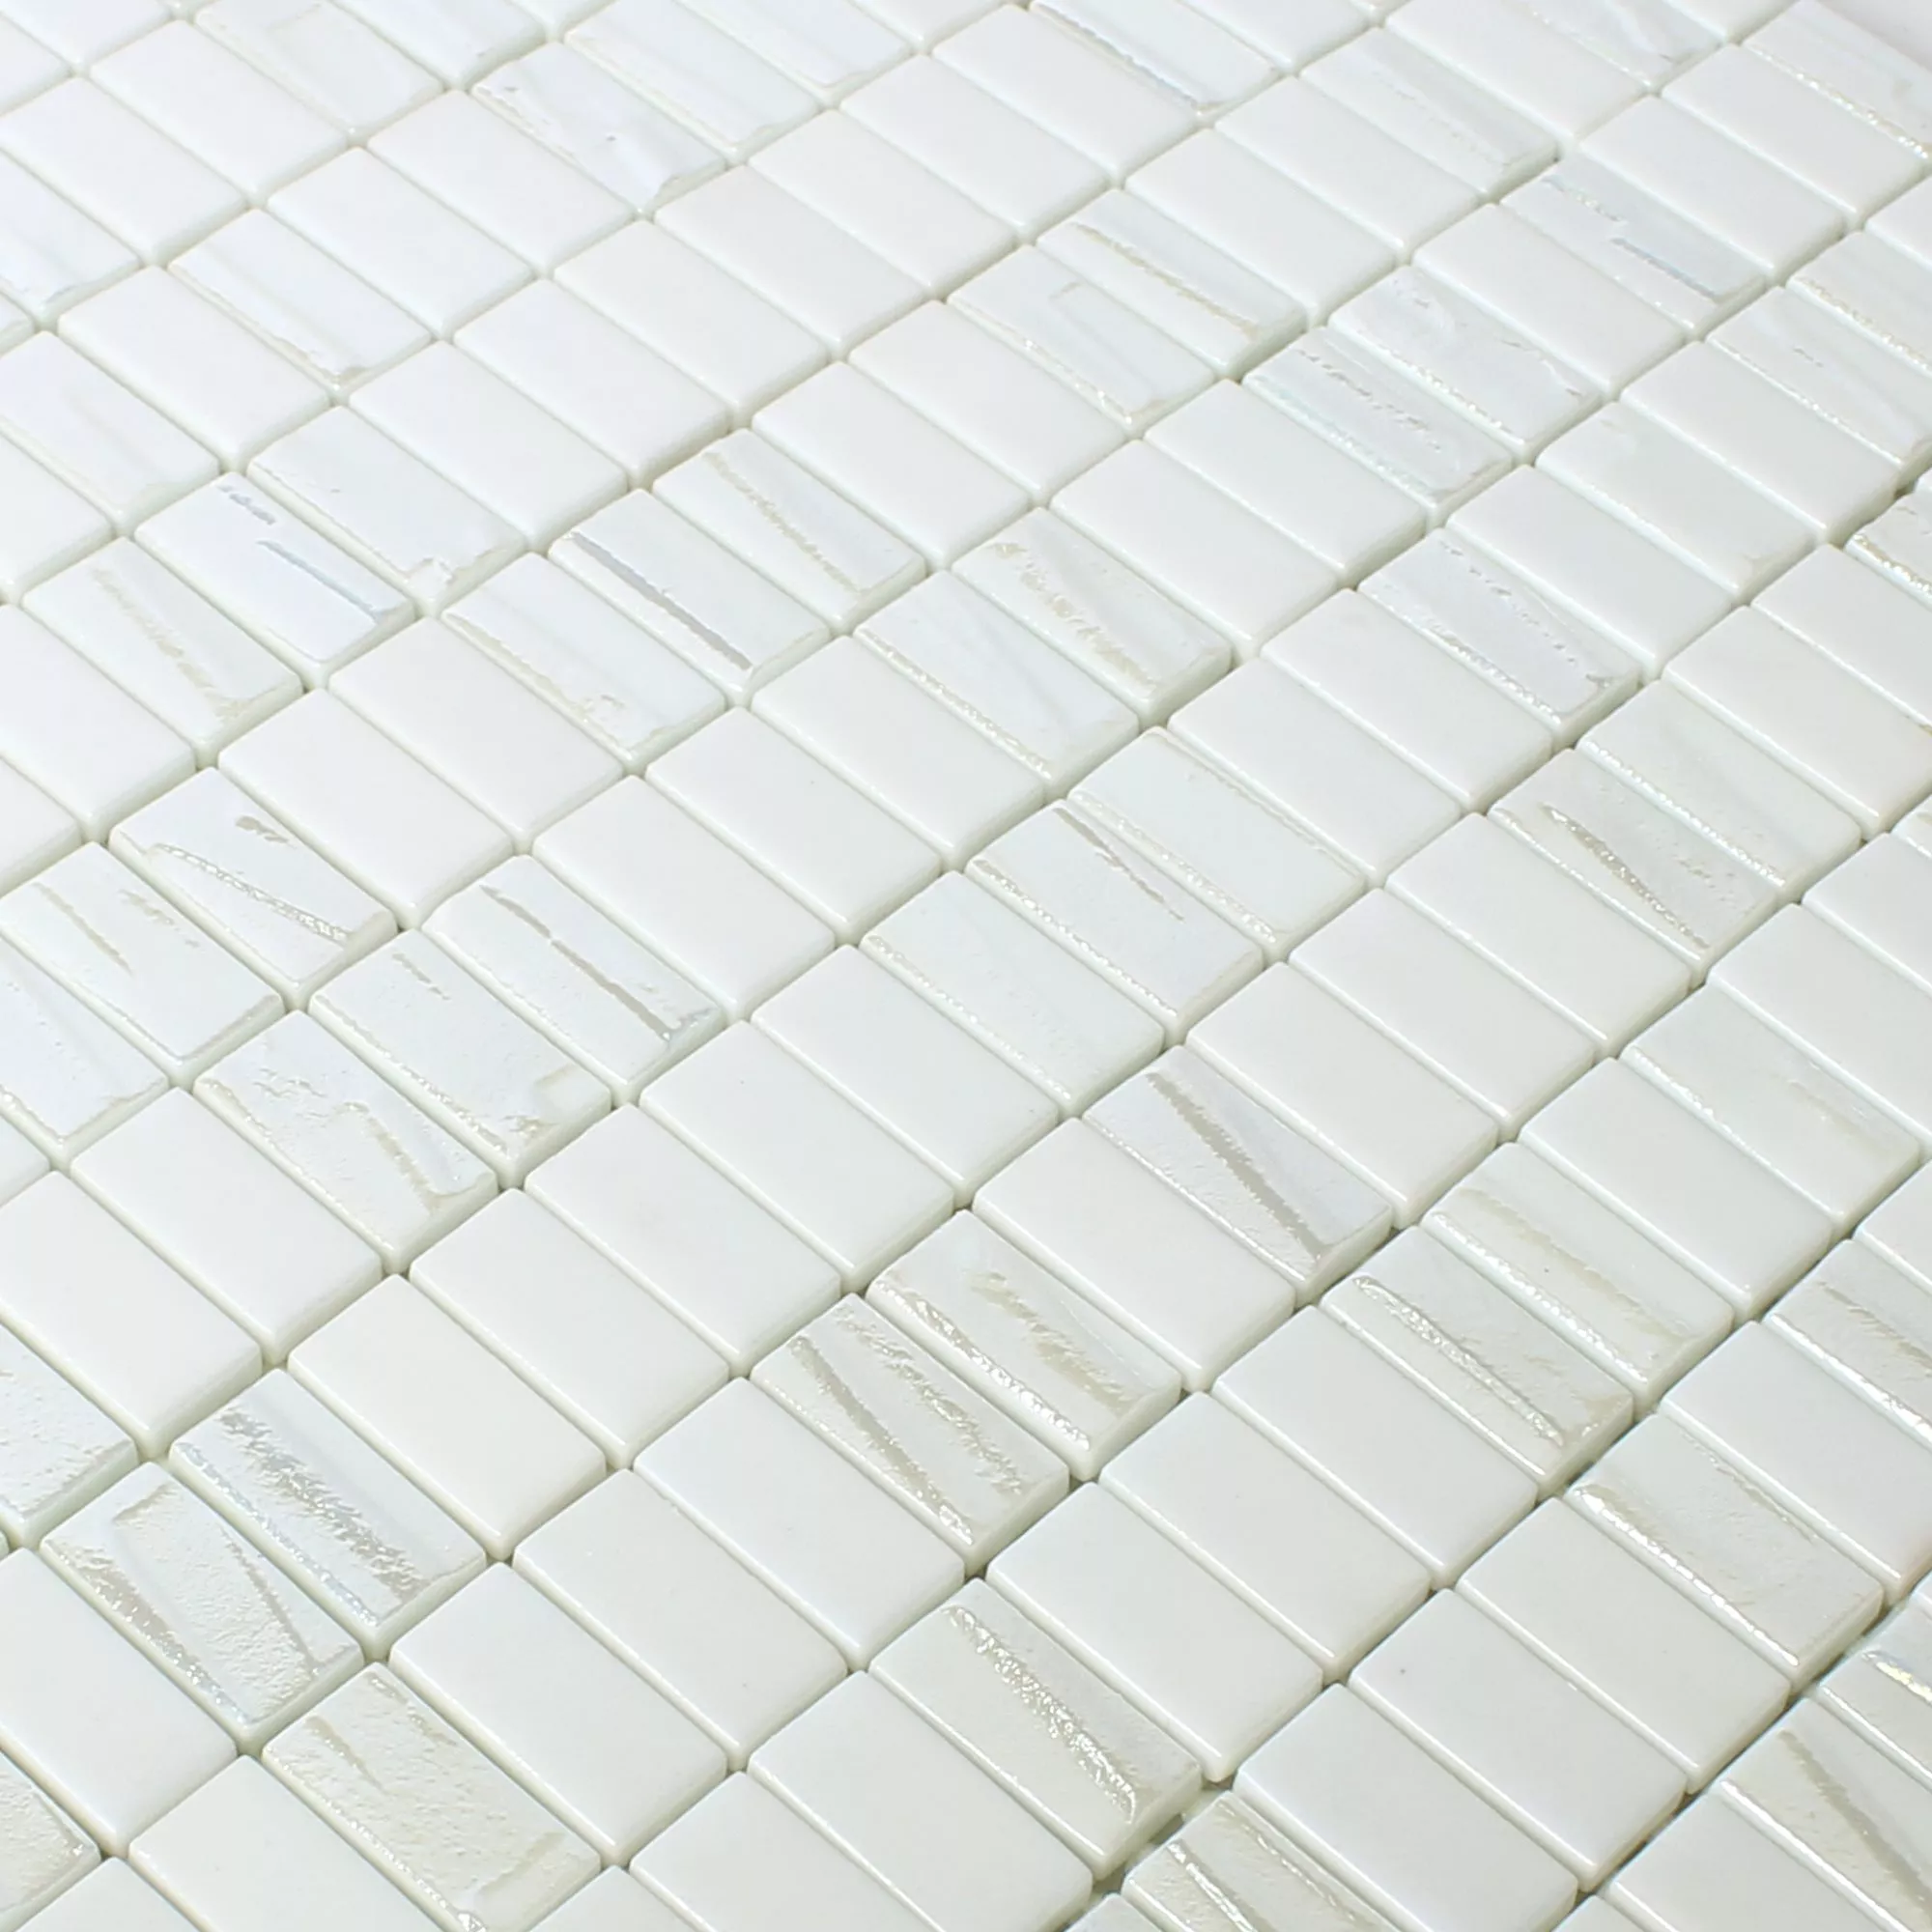 Campione Mosaico Vetro Piastrella Presley Bianco Metallico Maglia